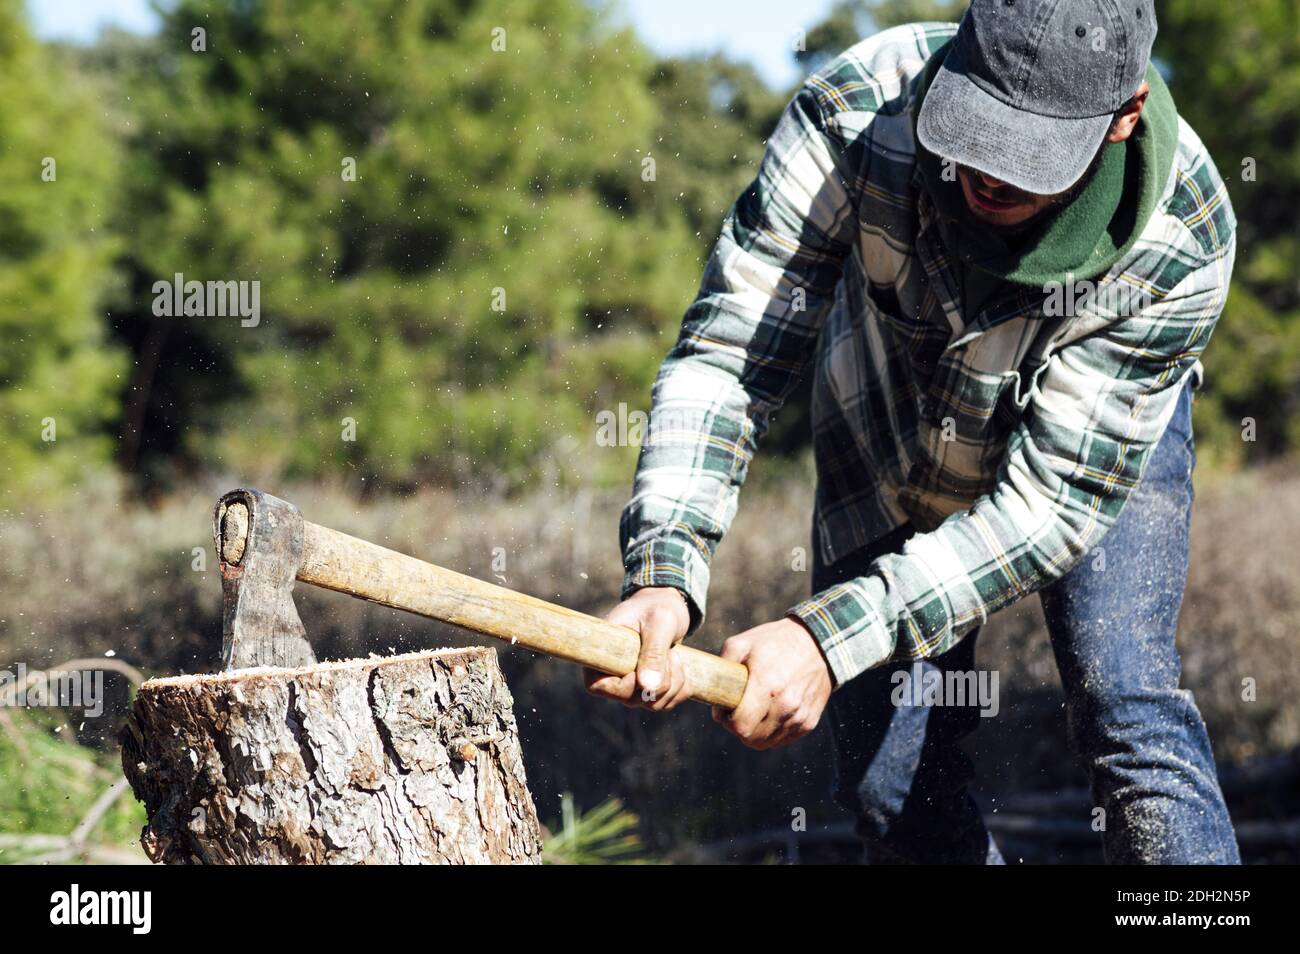 cortando leña con un hacha Stock Photo